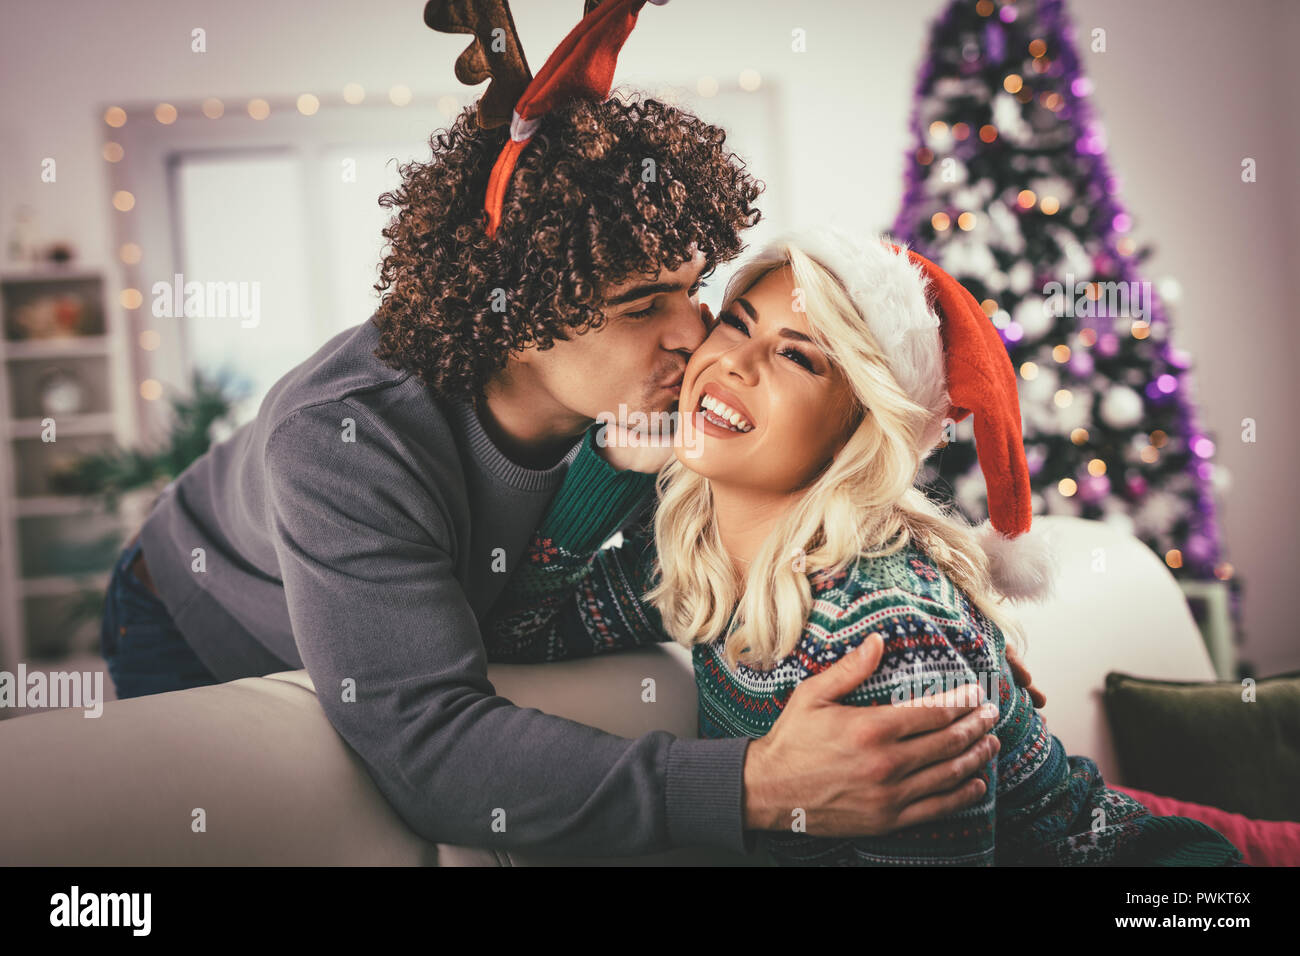 Paar in der gemütlichen warmen Pullover auf ein Weihnachten - Neujahr, Lächeln, Küssen, Spaß mit einander. Stockfoto